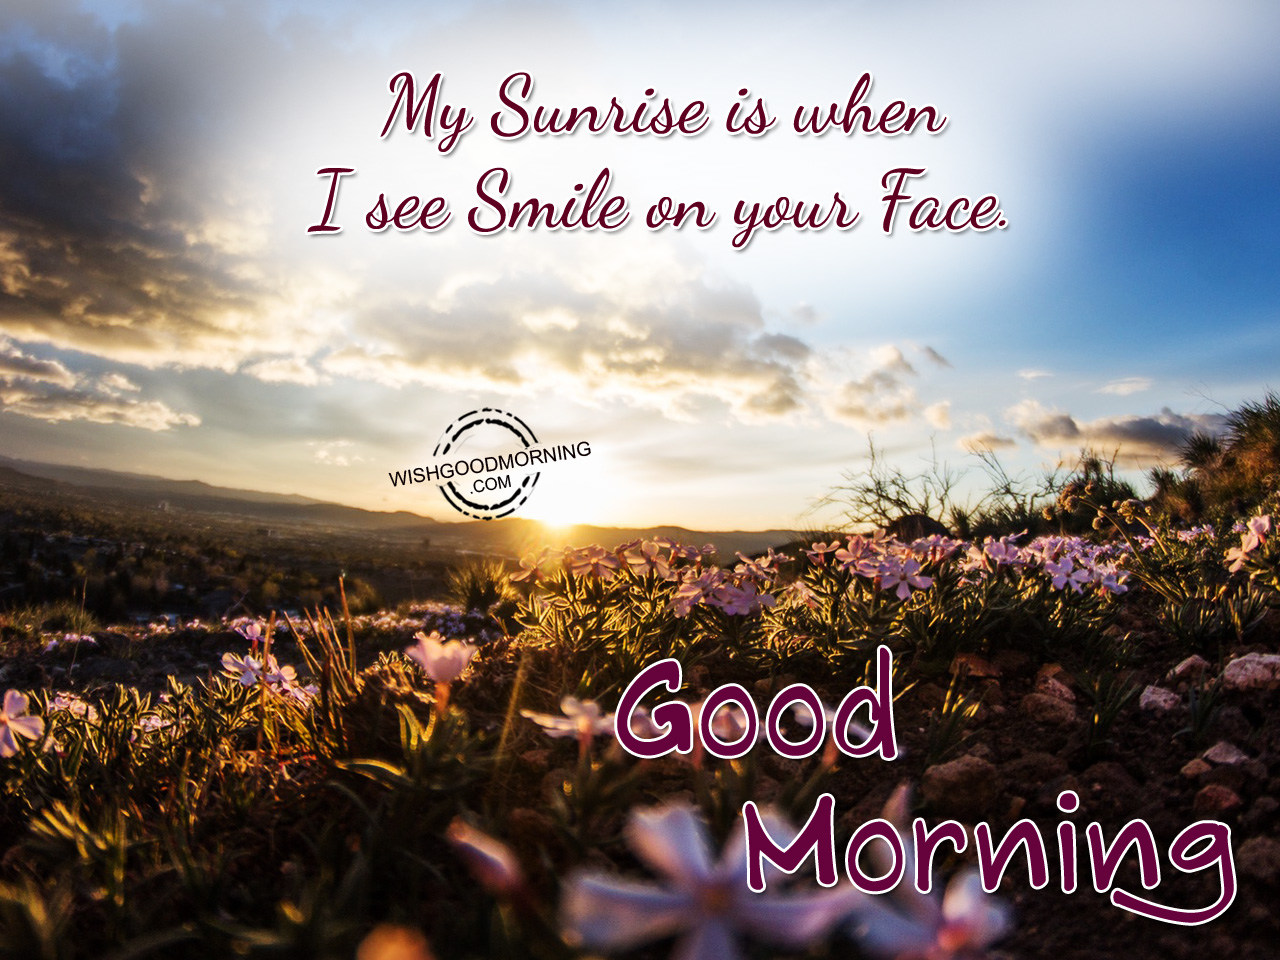 My beautiful morning. Good morning со смыслом. Доброе утро картинки красивые необычные нежные. Good morning and smile. Good morning Wishes.